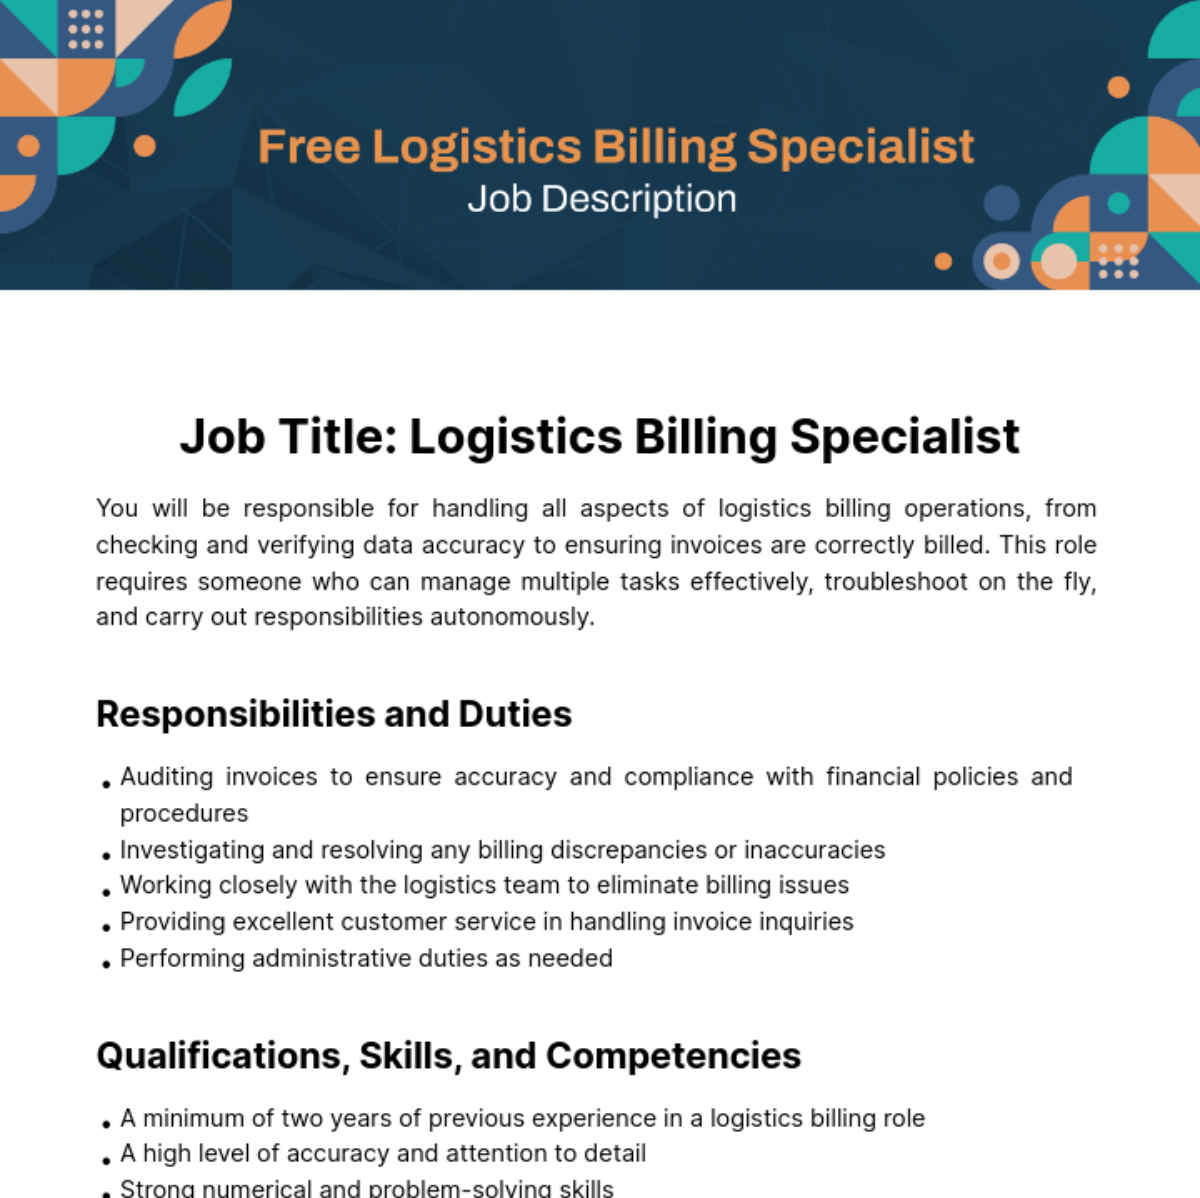 Free Logistics Billing Specialist Job Description Template